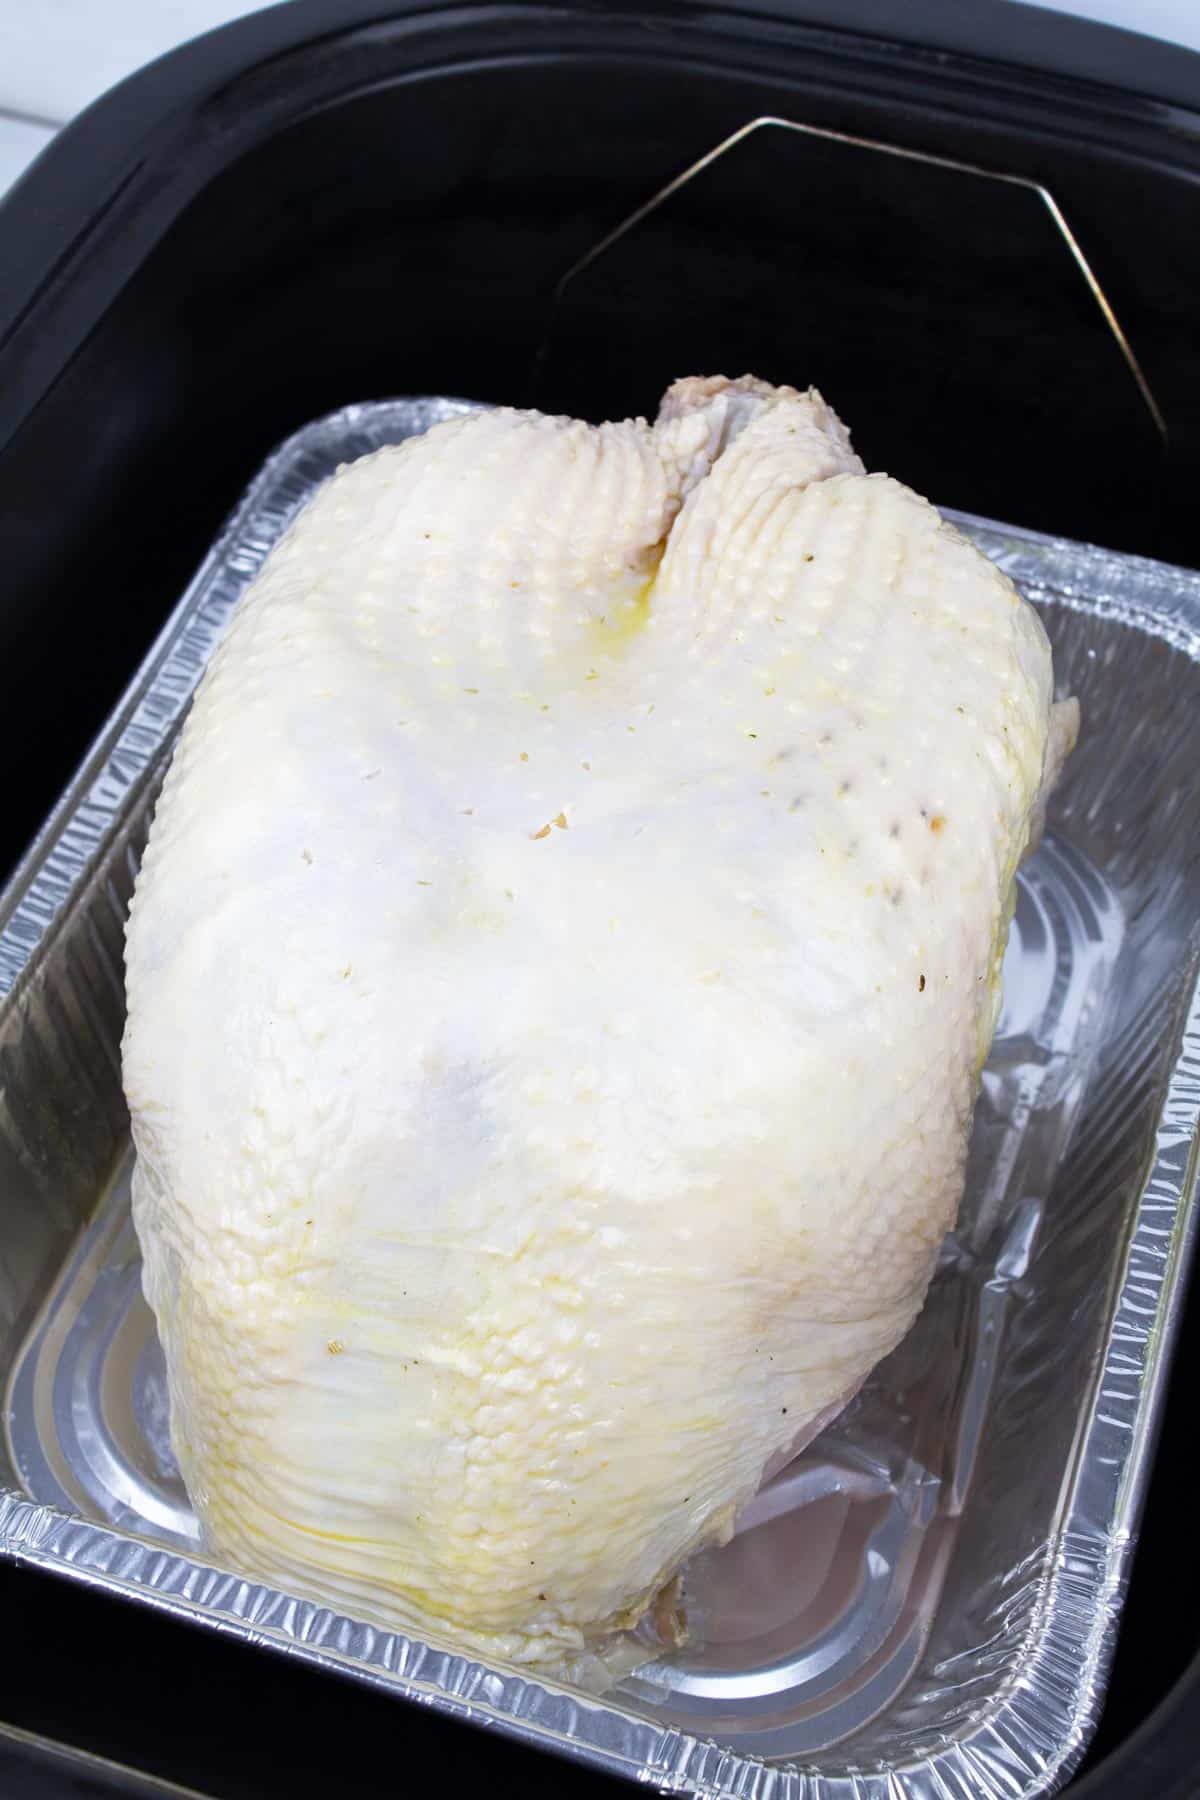 Turkey breast in foil pan set down in roaster oven.